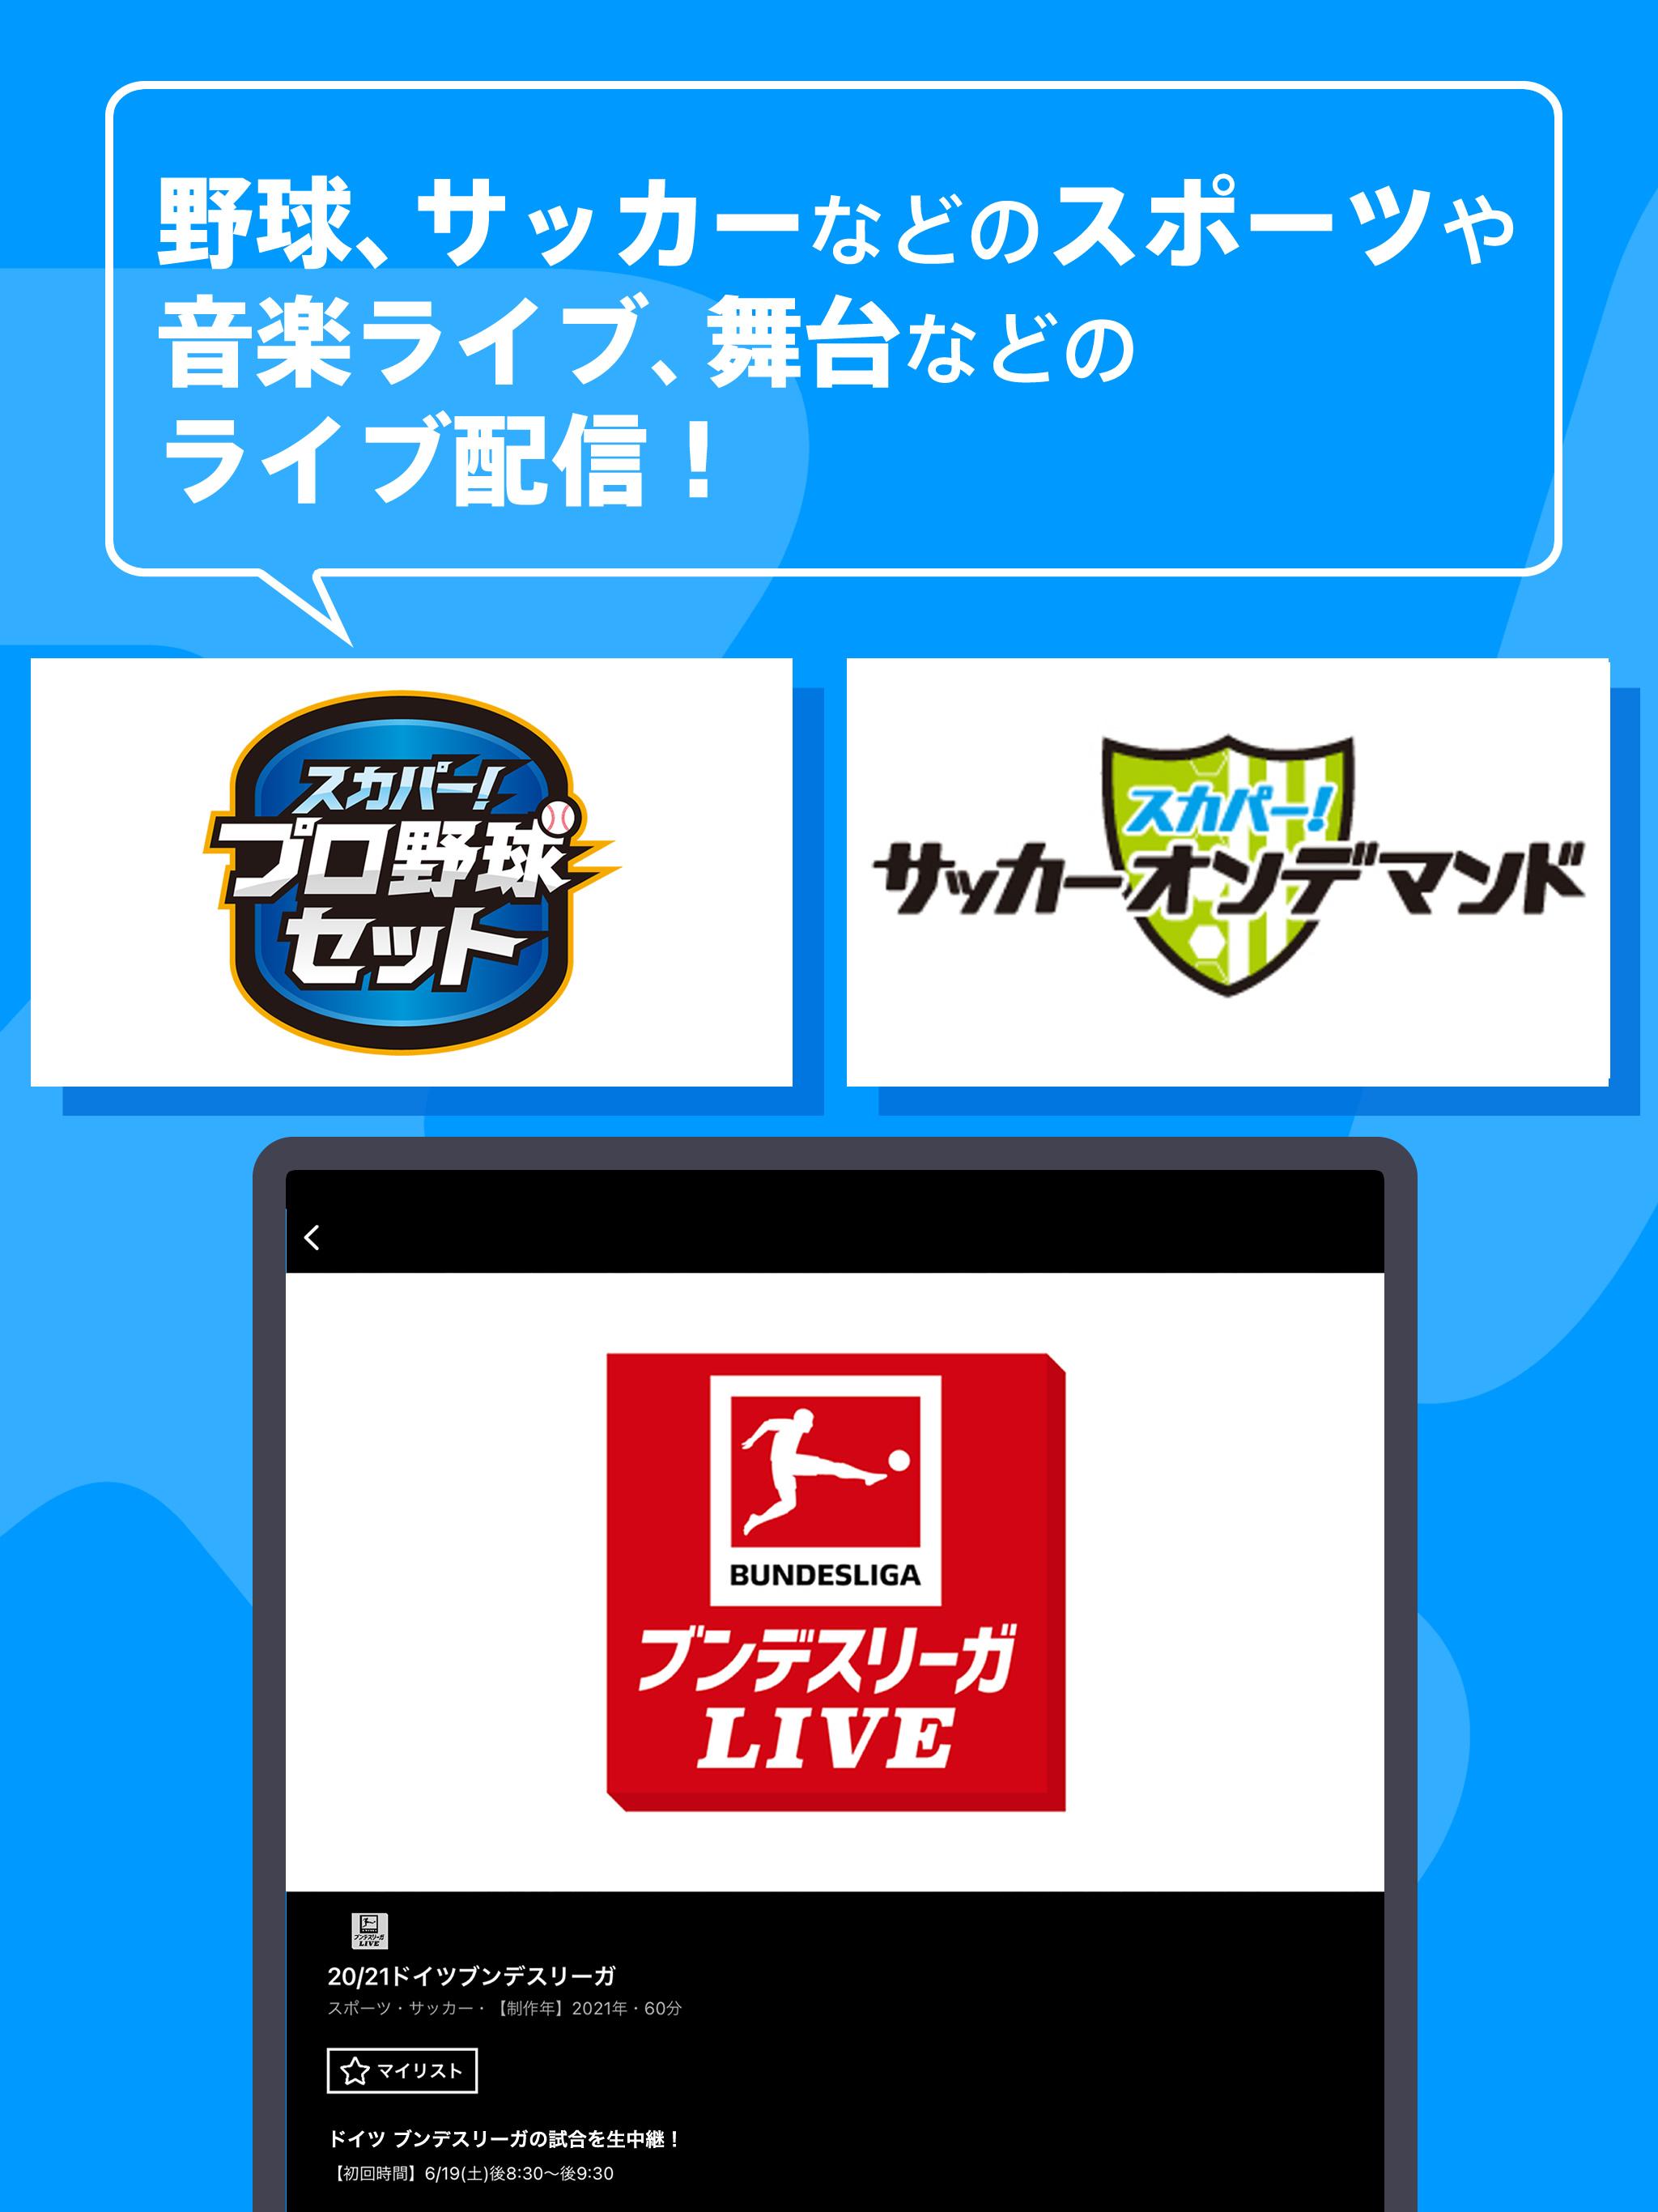 スカパー オンデマンド For Android Apk Download